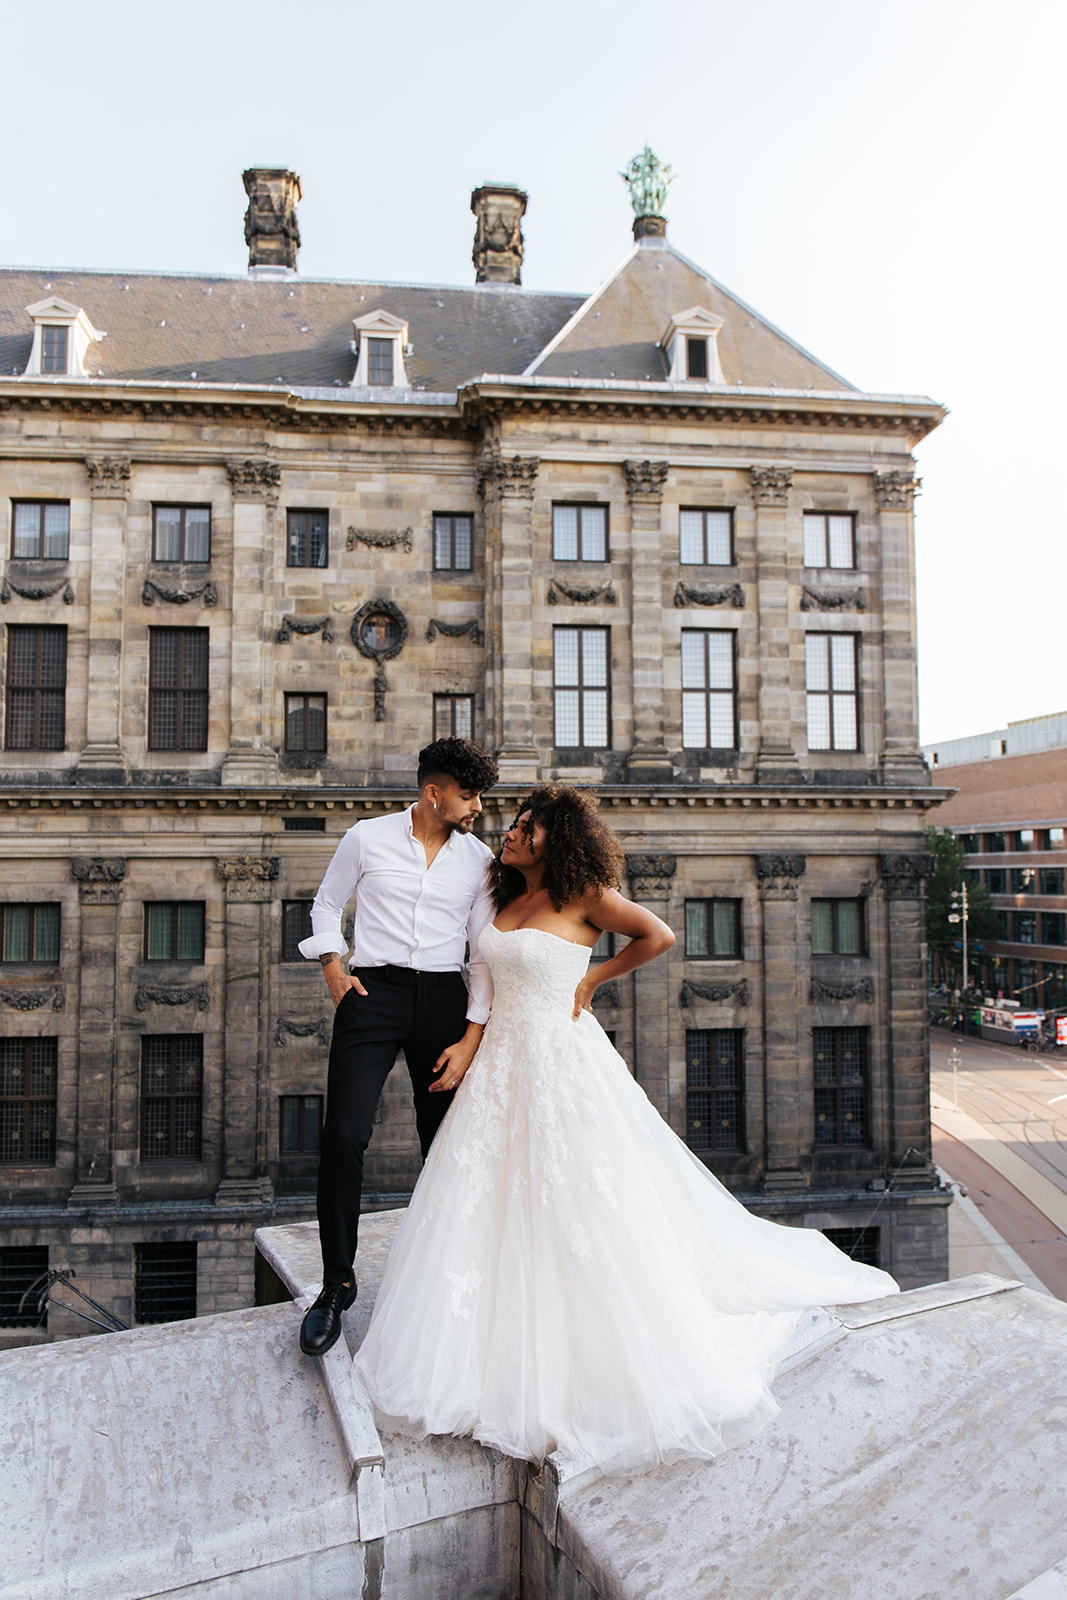 Een bruidspaar dat boven op het dak van de nieuwe kerk staat, in Amsterdam. Ze poseren op het randje van het dak, met uitzicht op de straten en de omliggende gebouwen van Centrum Amsterdam.